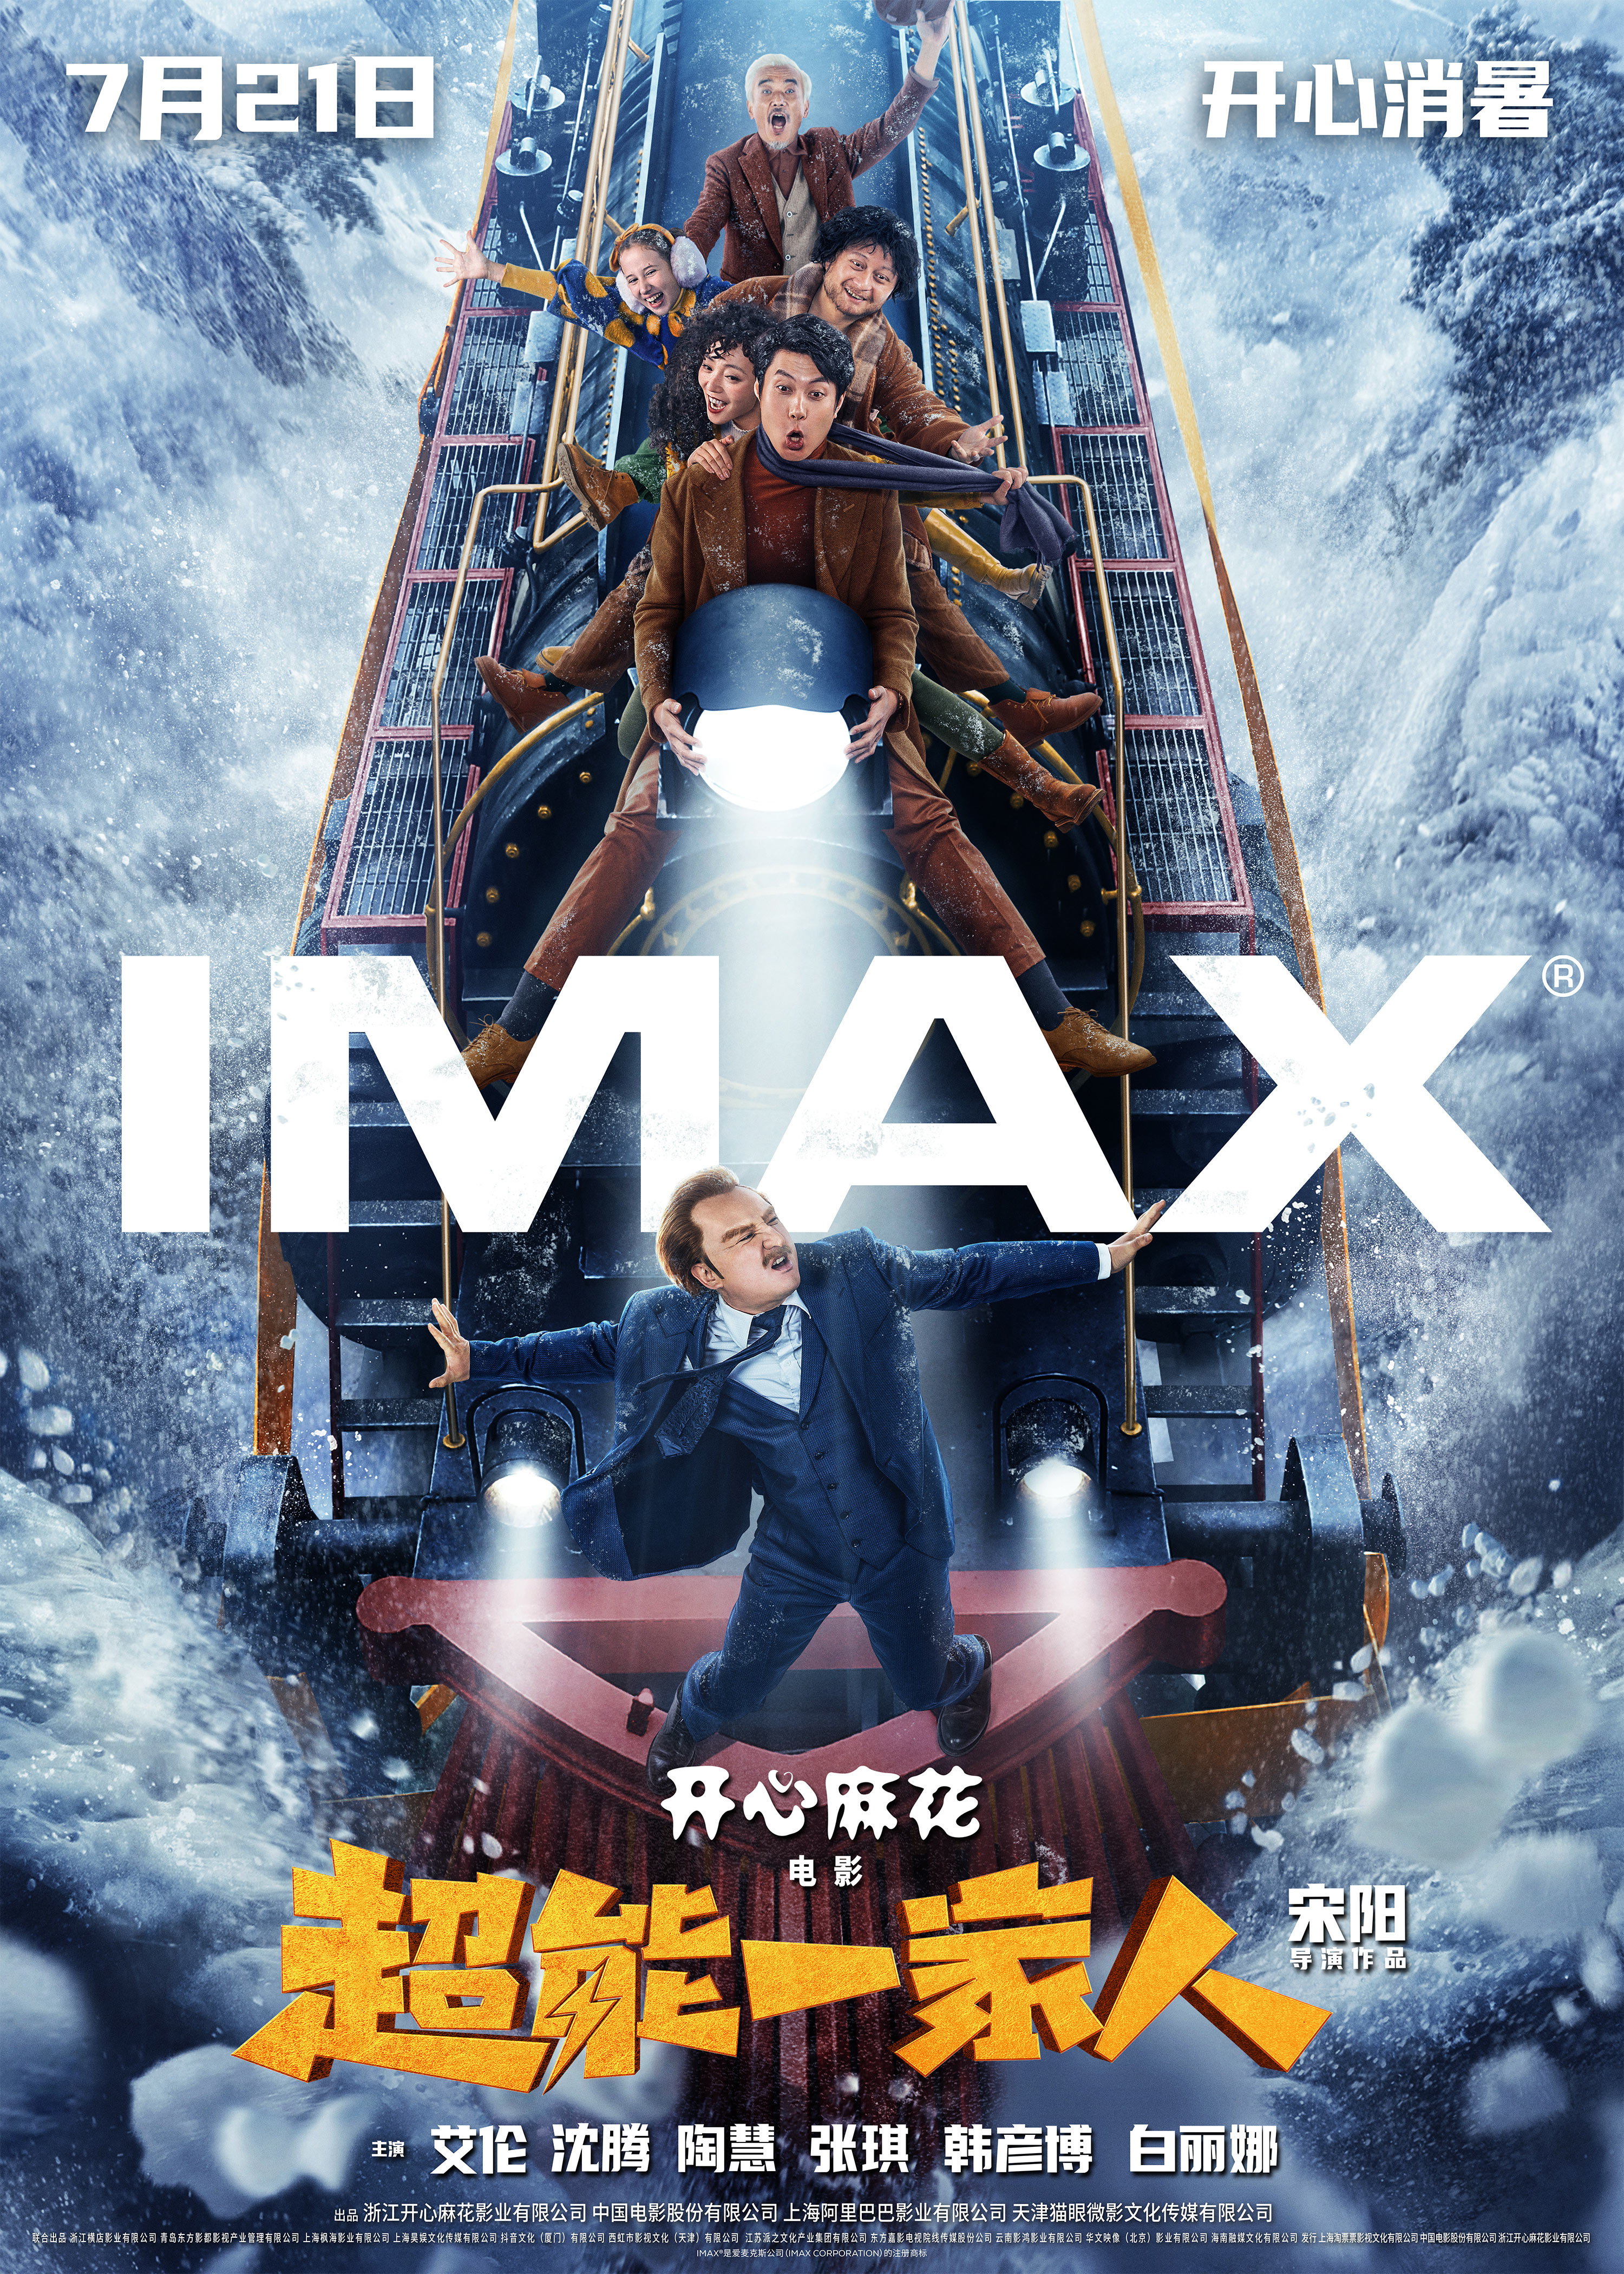 开心麻花《超能一家人》将于7.21登陆IMAX影院